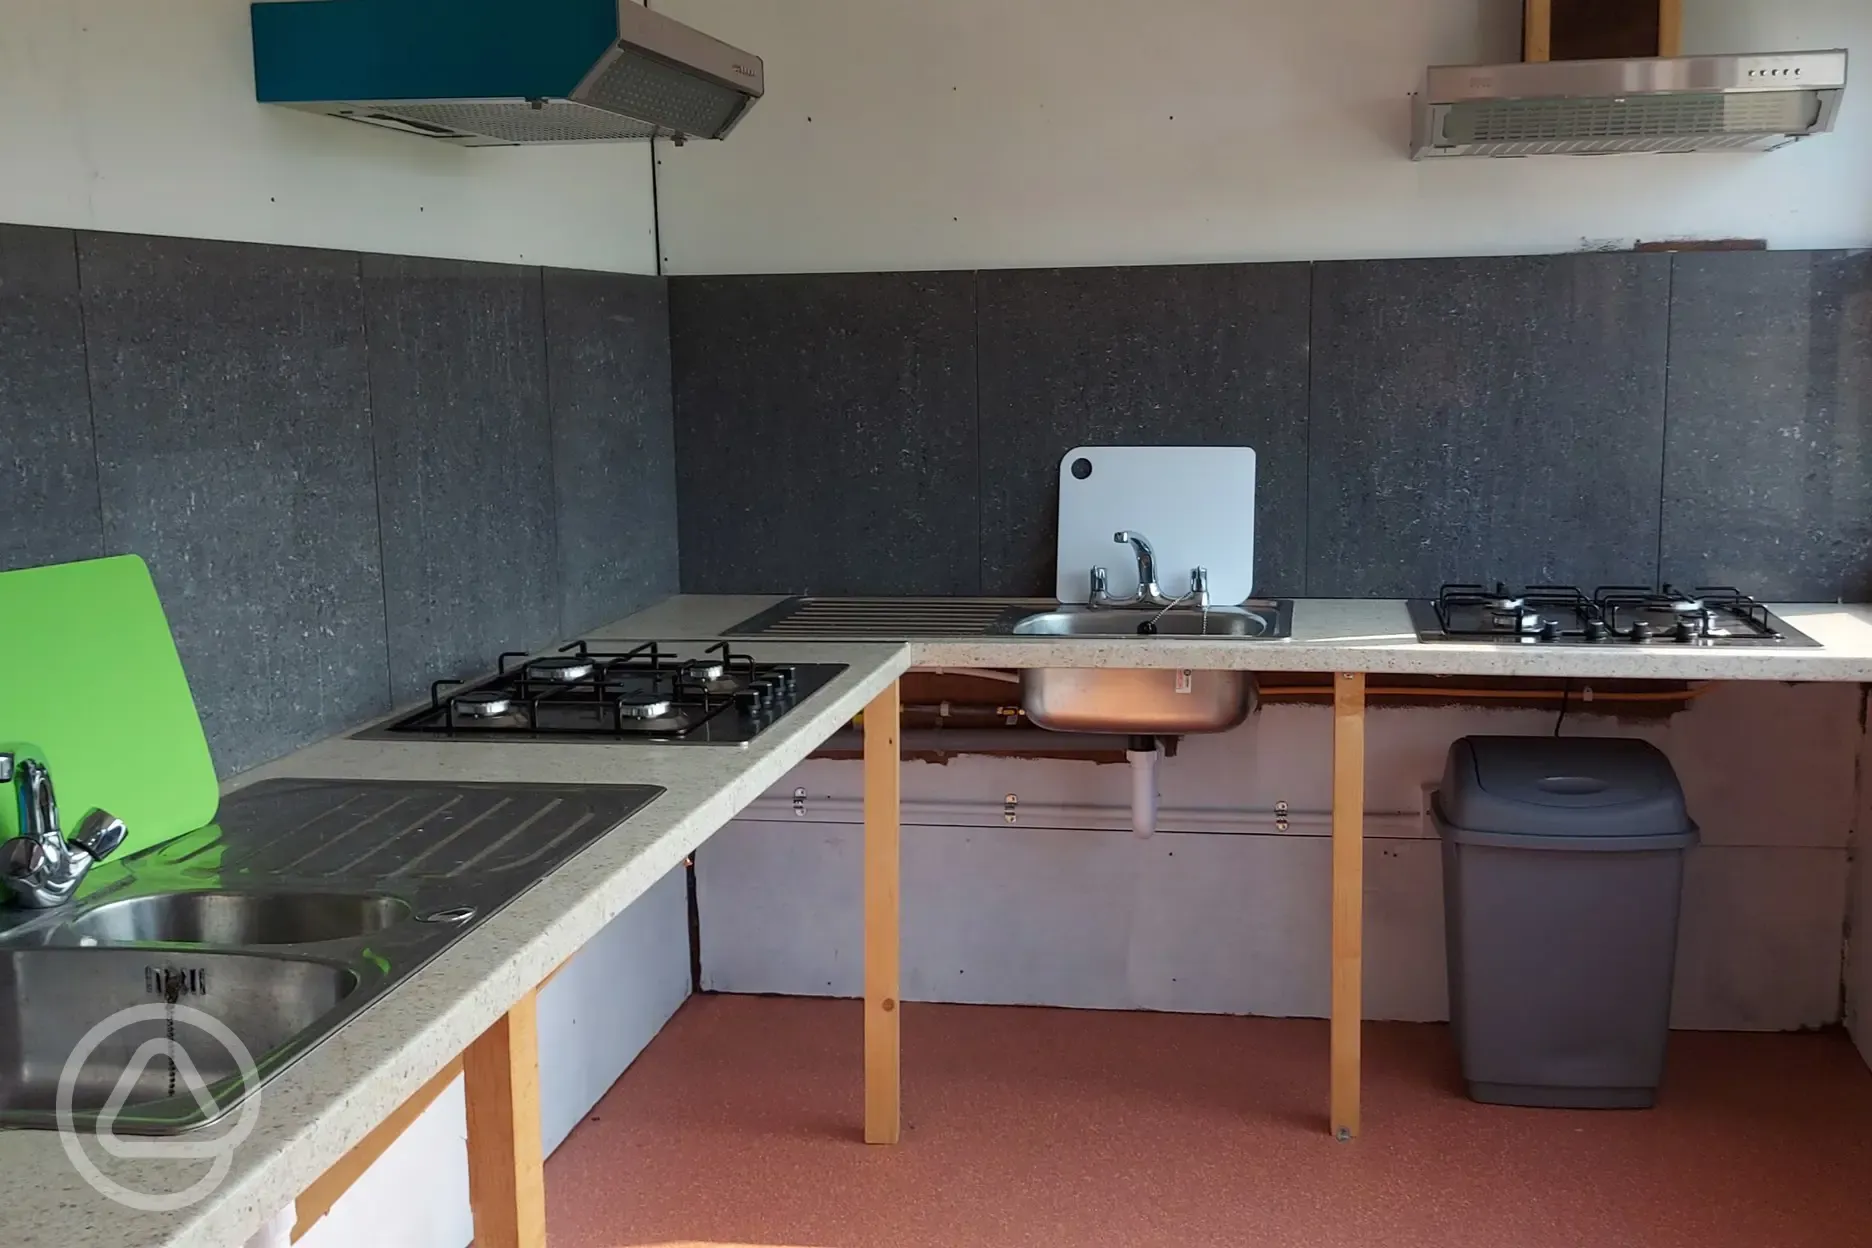 Camp kitchen interior